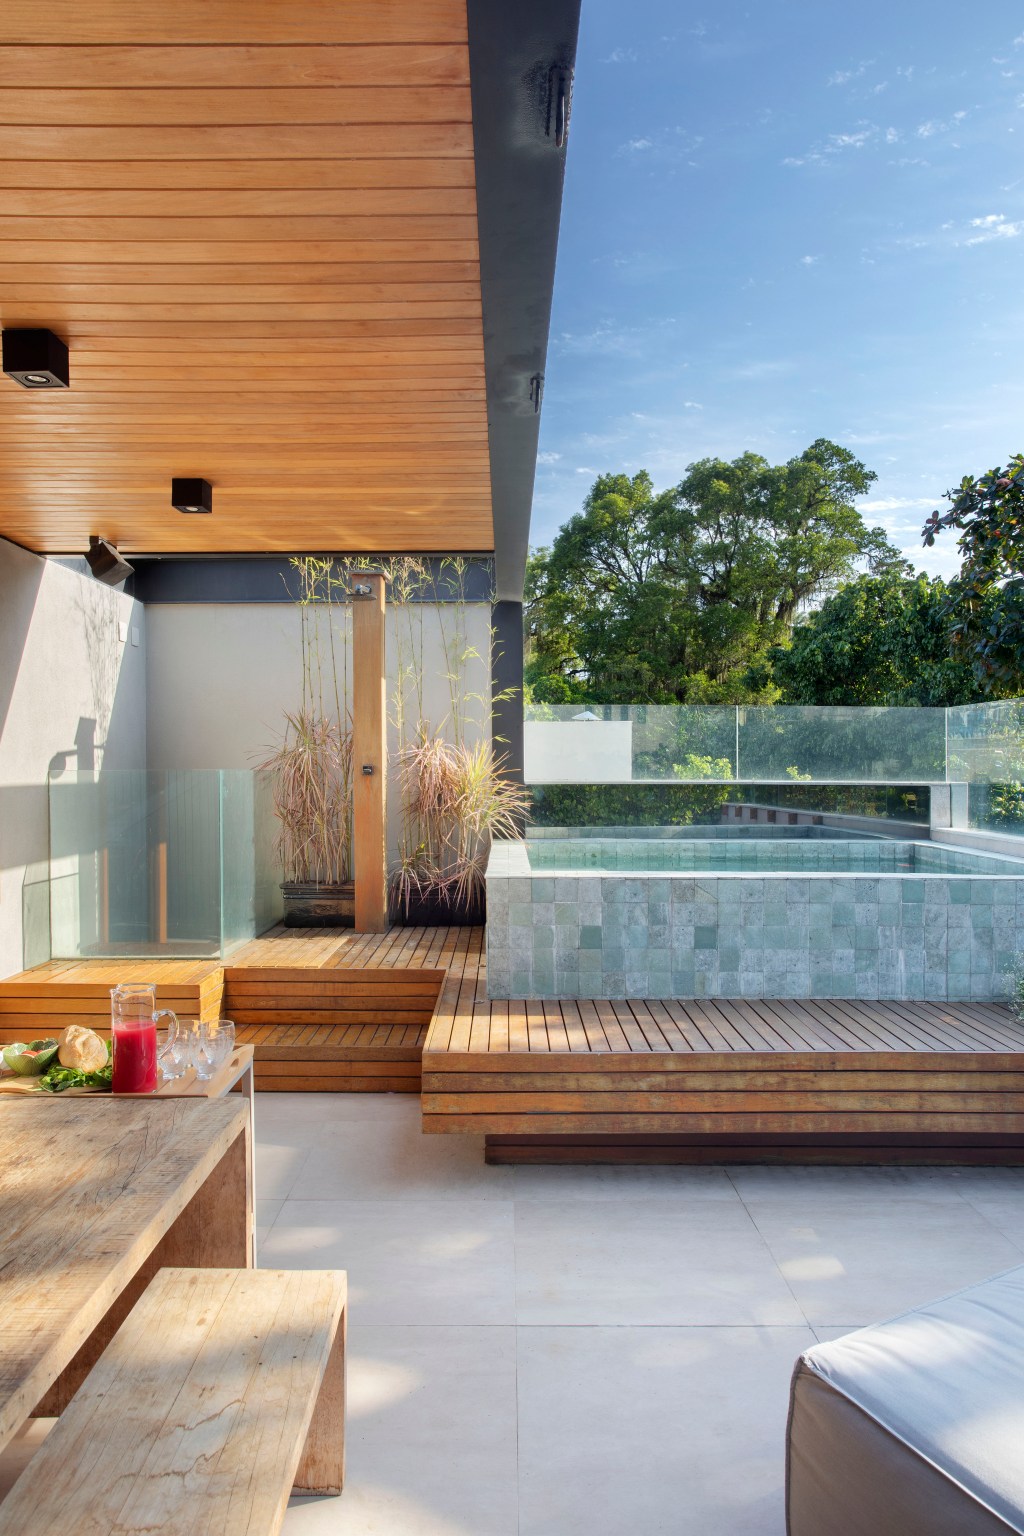 Casa vila Escala Arquitetura Rio de Janeiro reforma arquitetura terraço piscina madeira